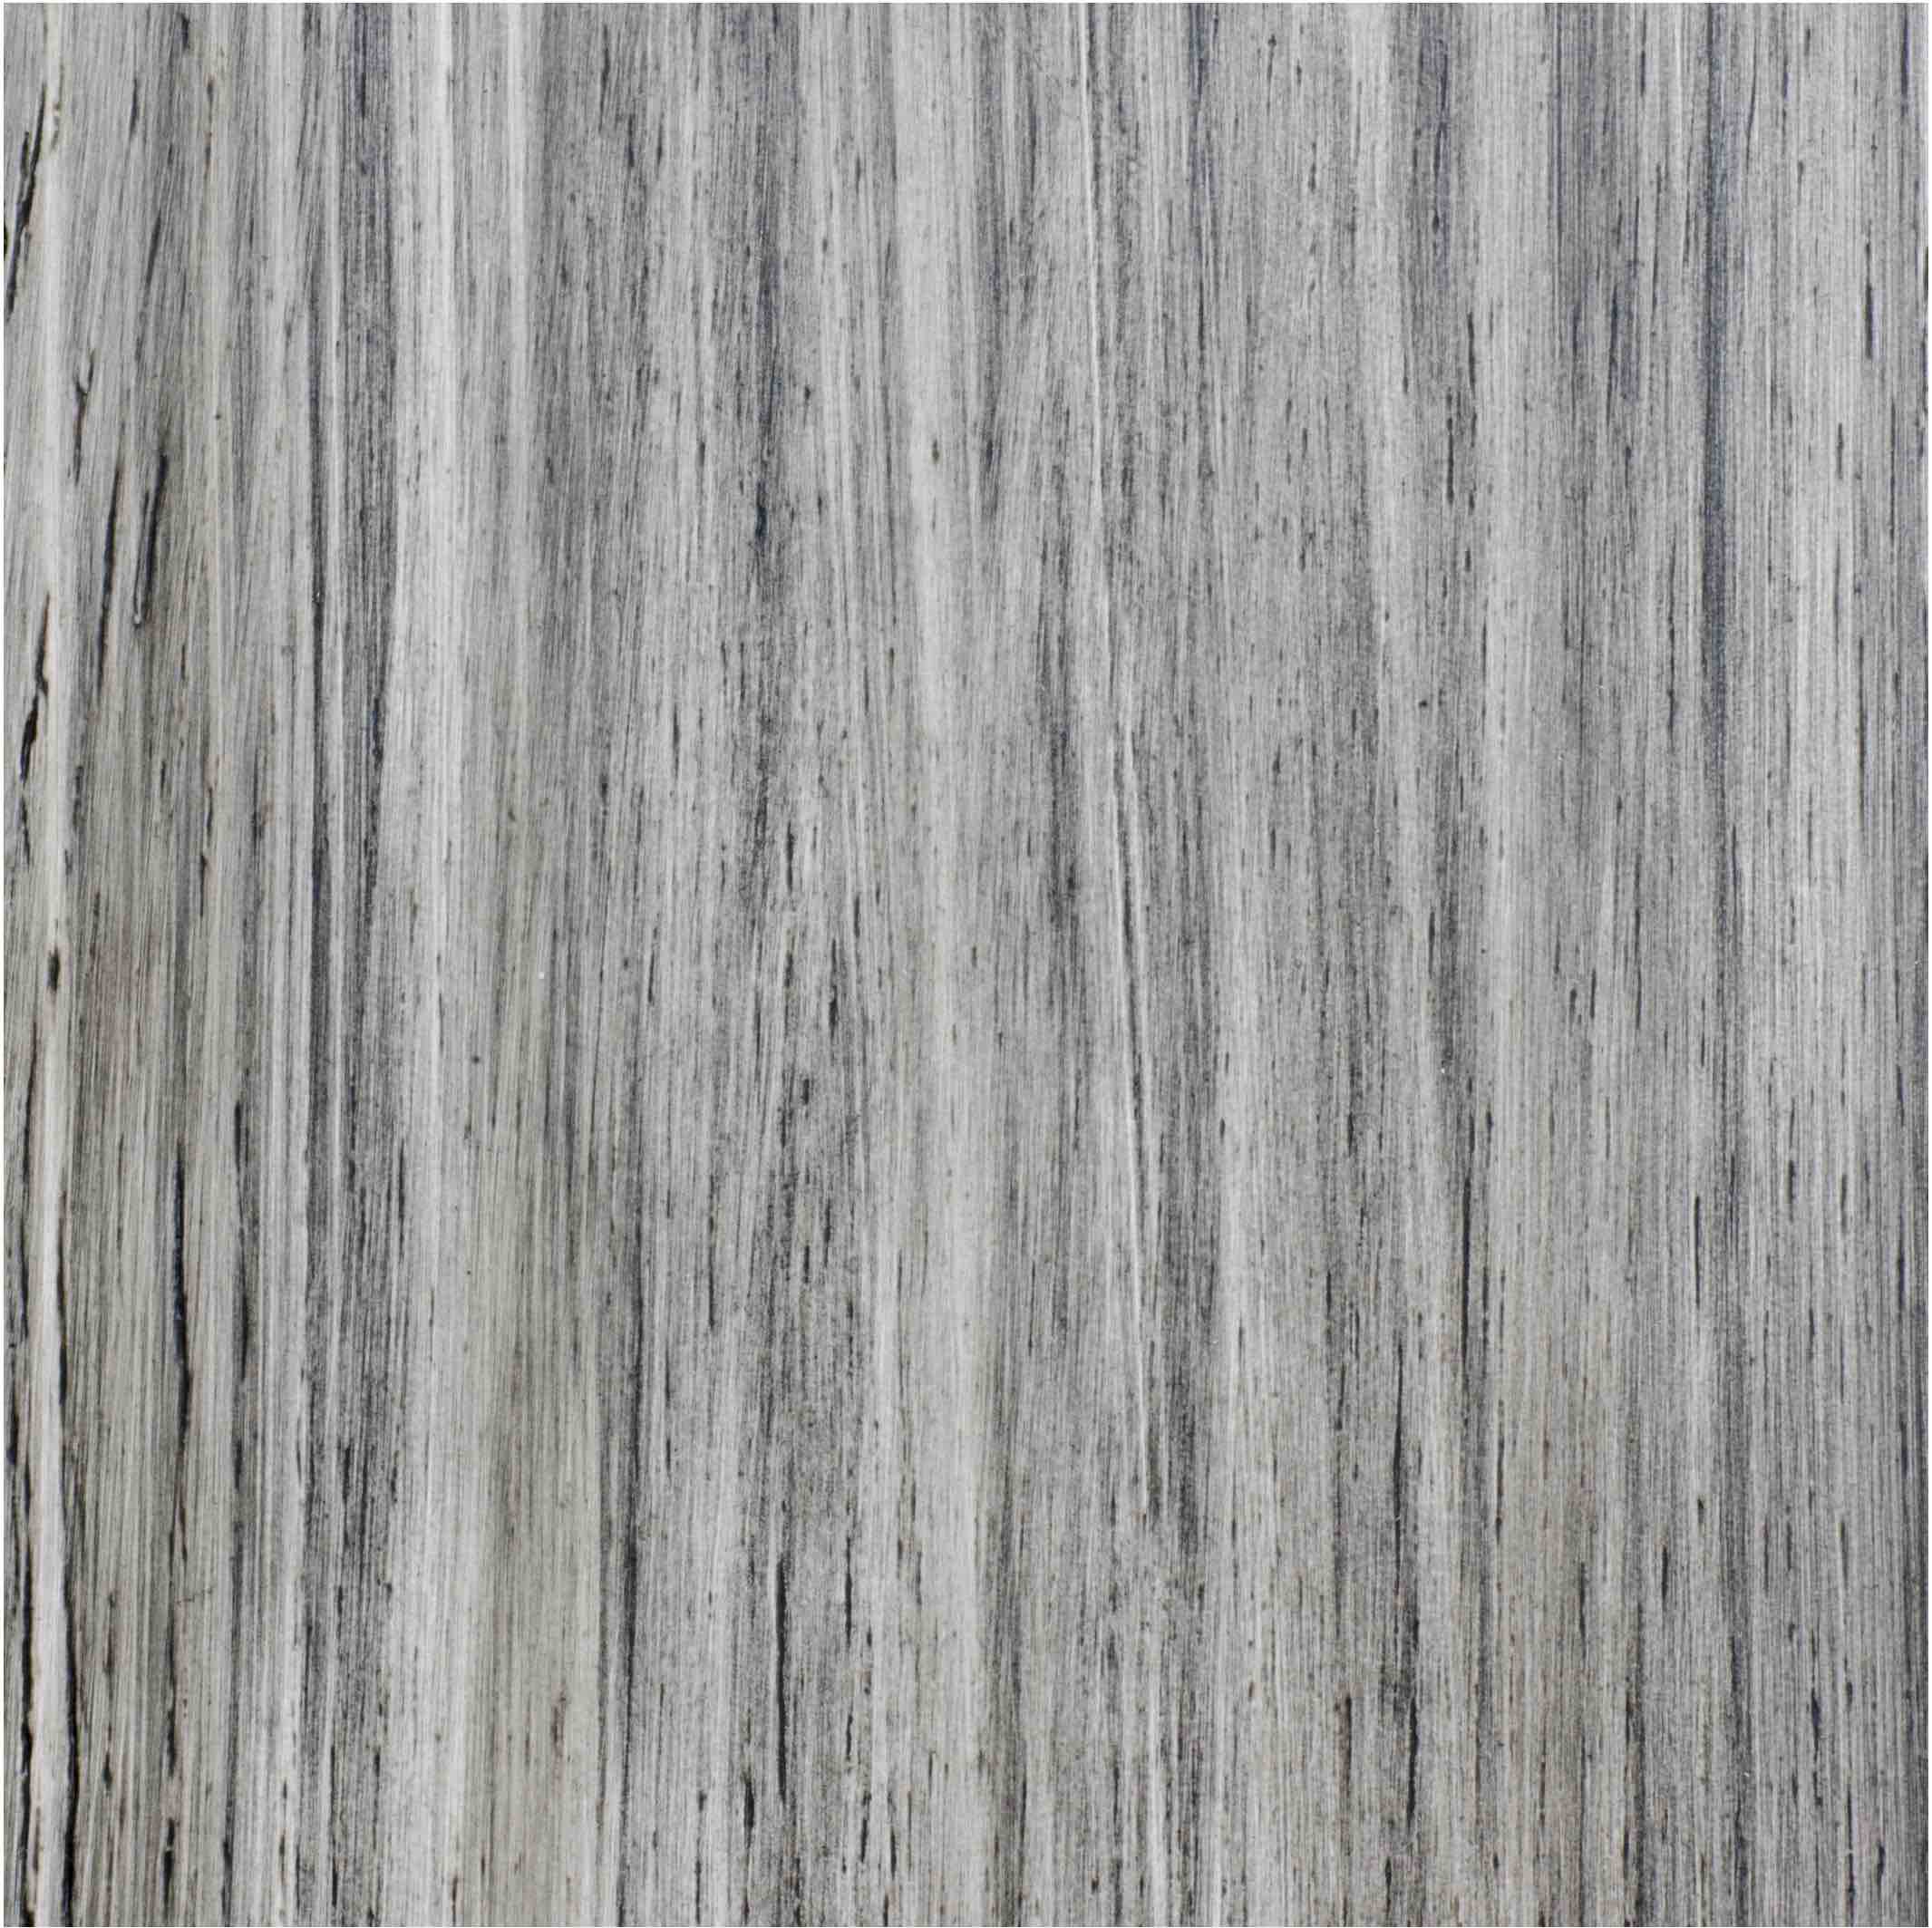 custom color engineered hardwood floor grey